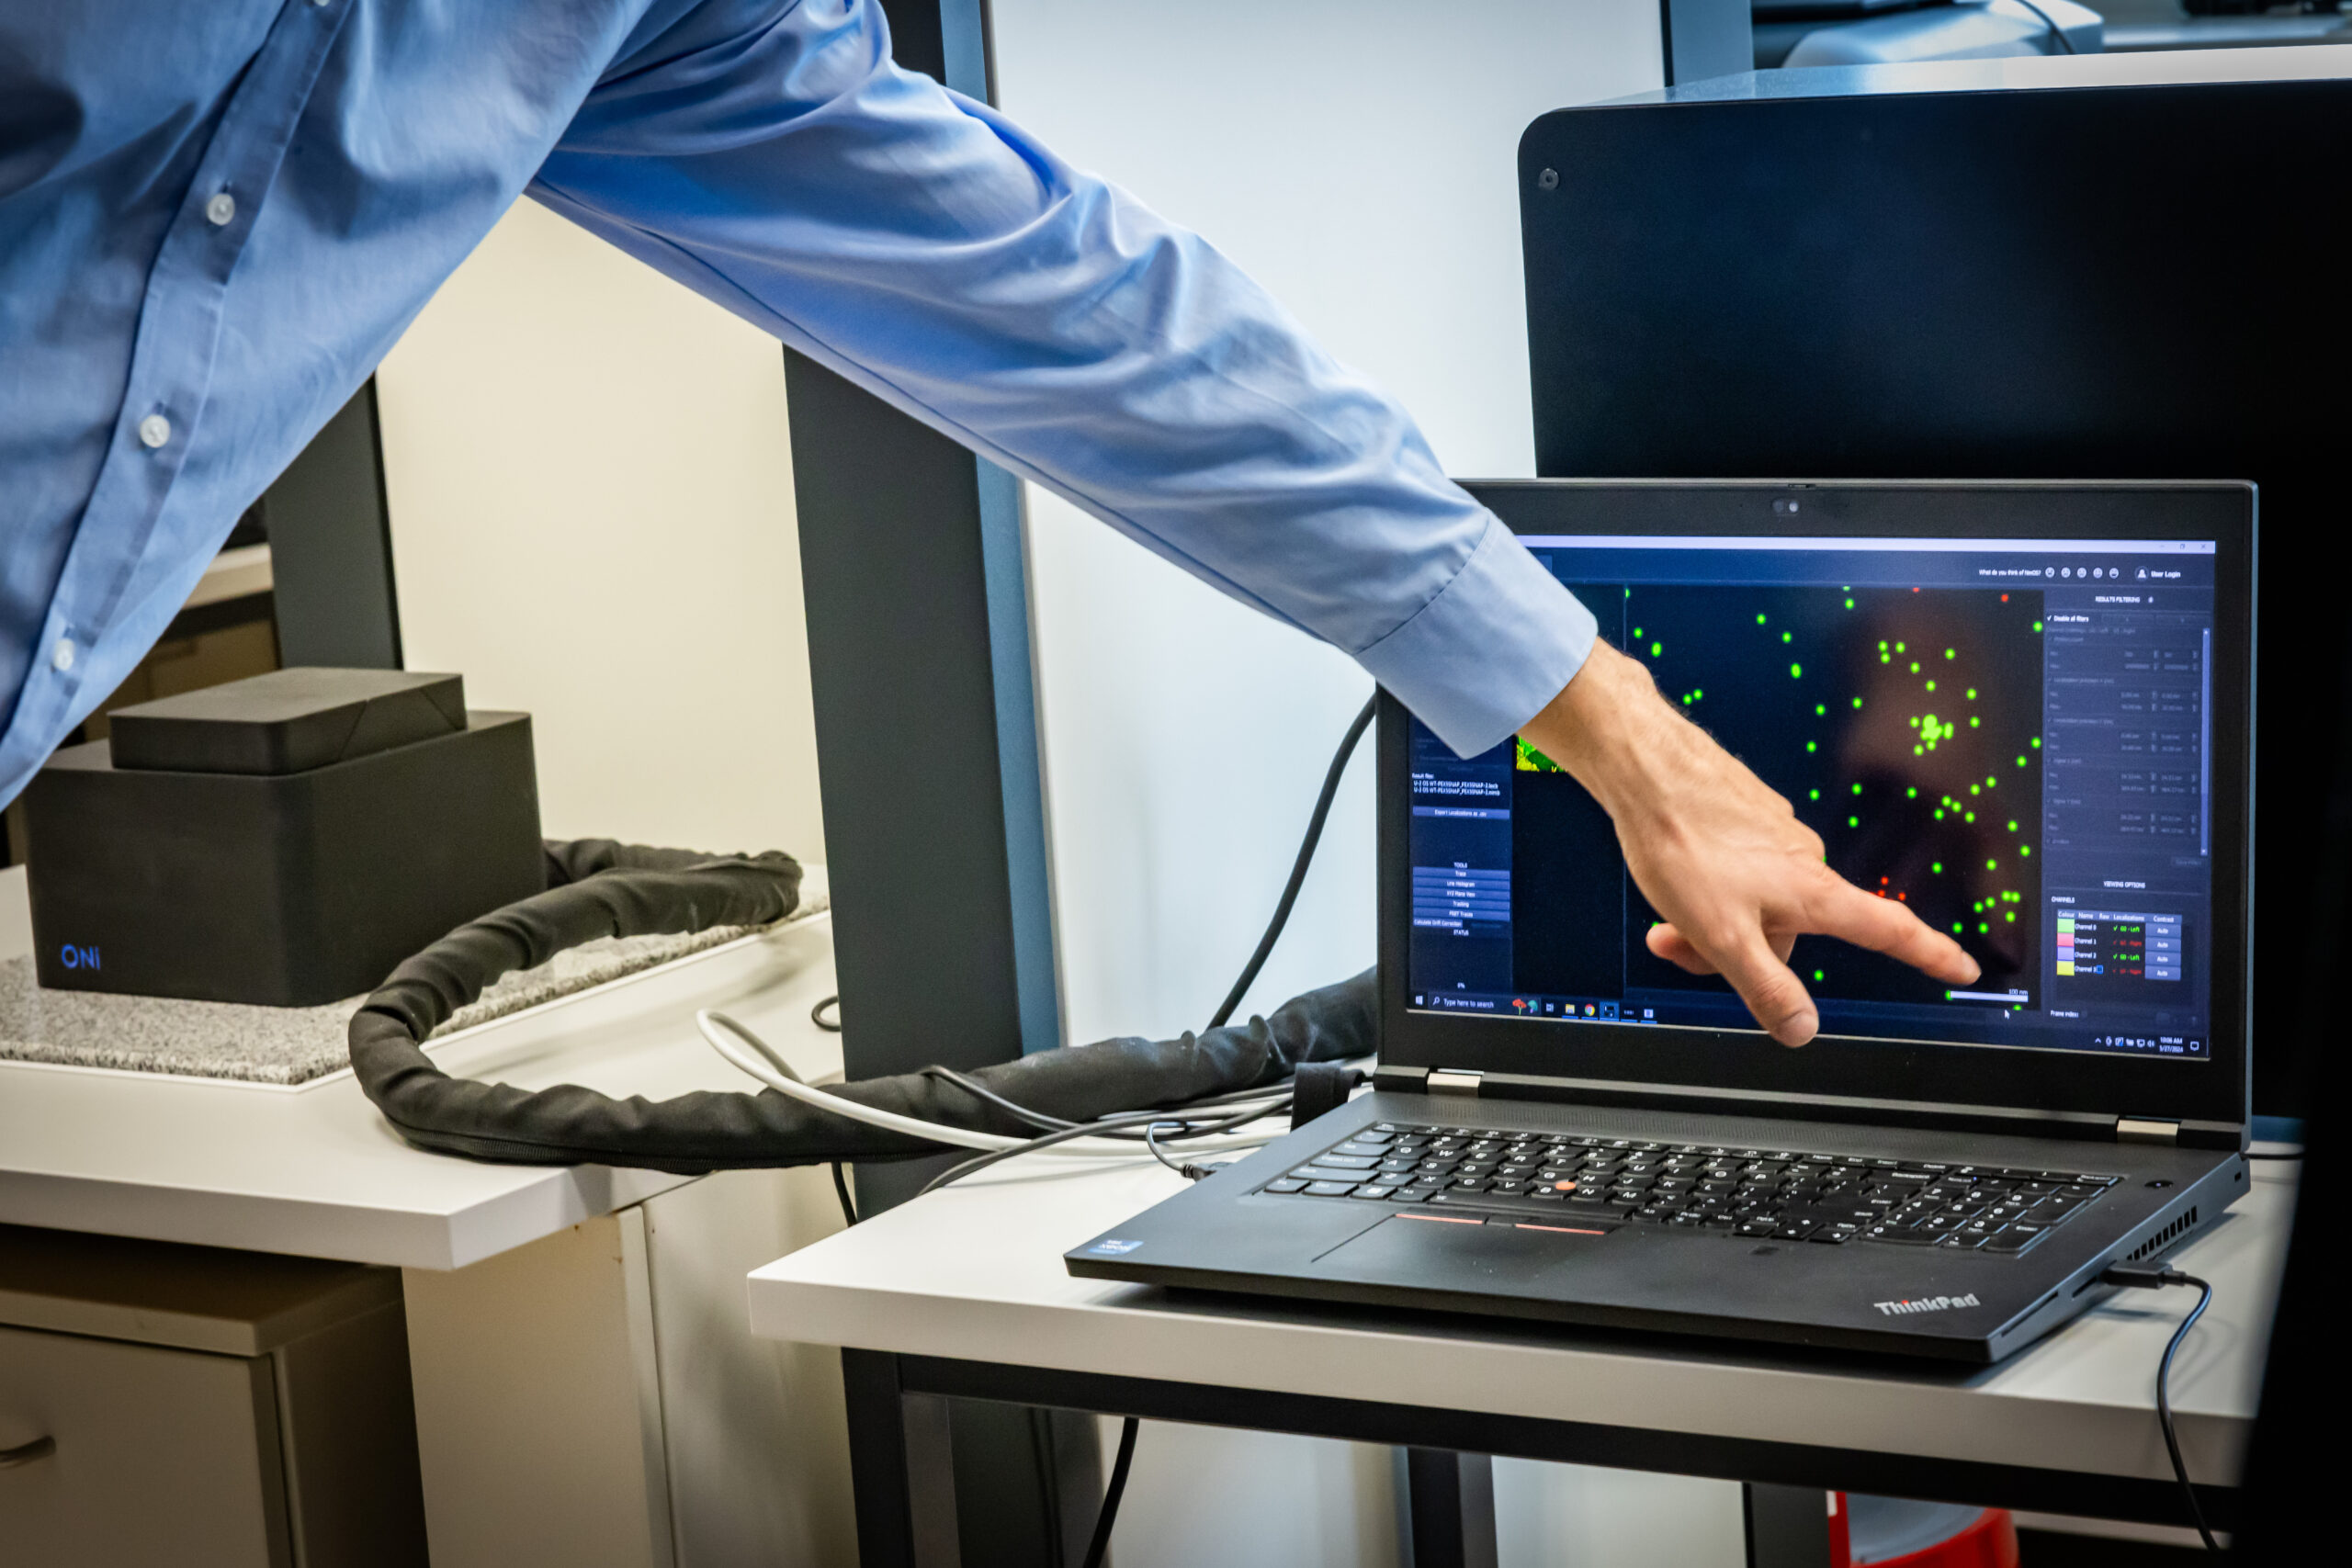 Hand zeigt auf einen Laptop, auf dem das Bild eines Lokalisationsmikroskops zu sehen ist.